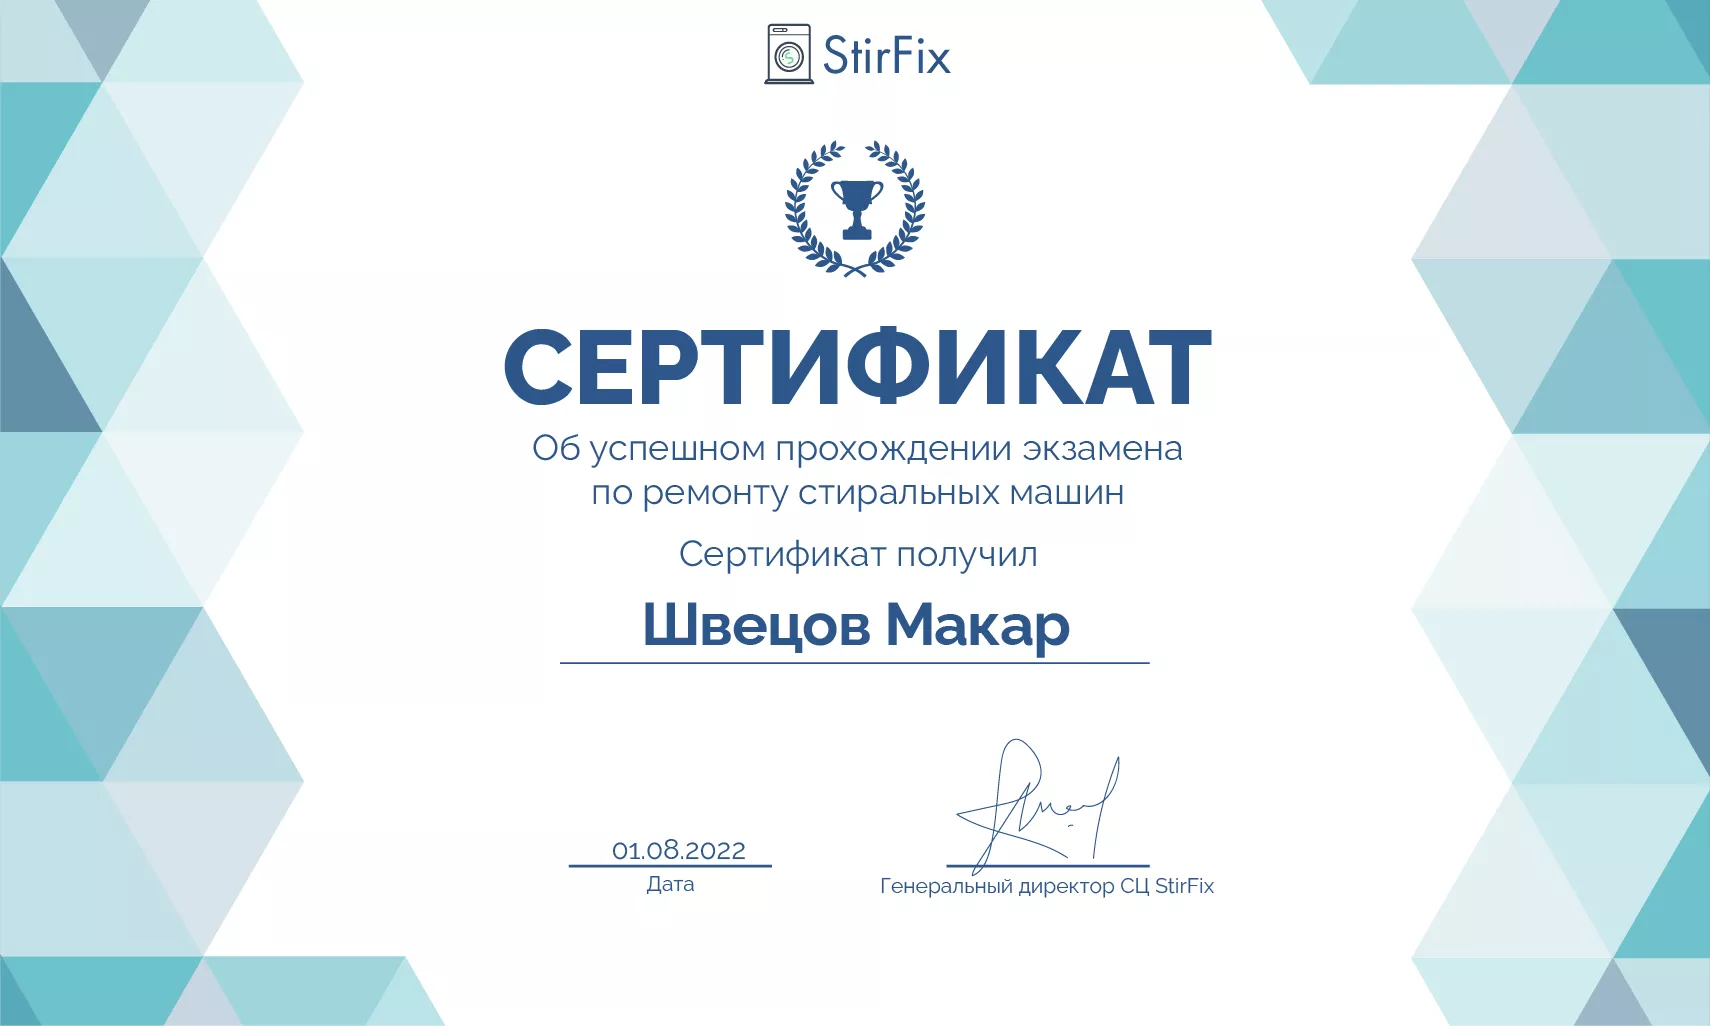 Швецов Макар сертификат мастера по ремонту стиральных машин